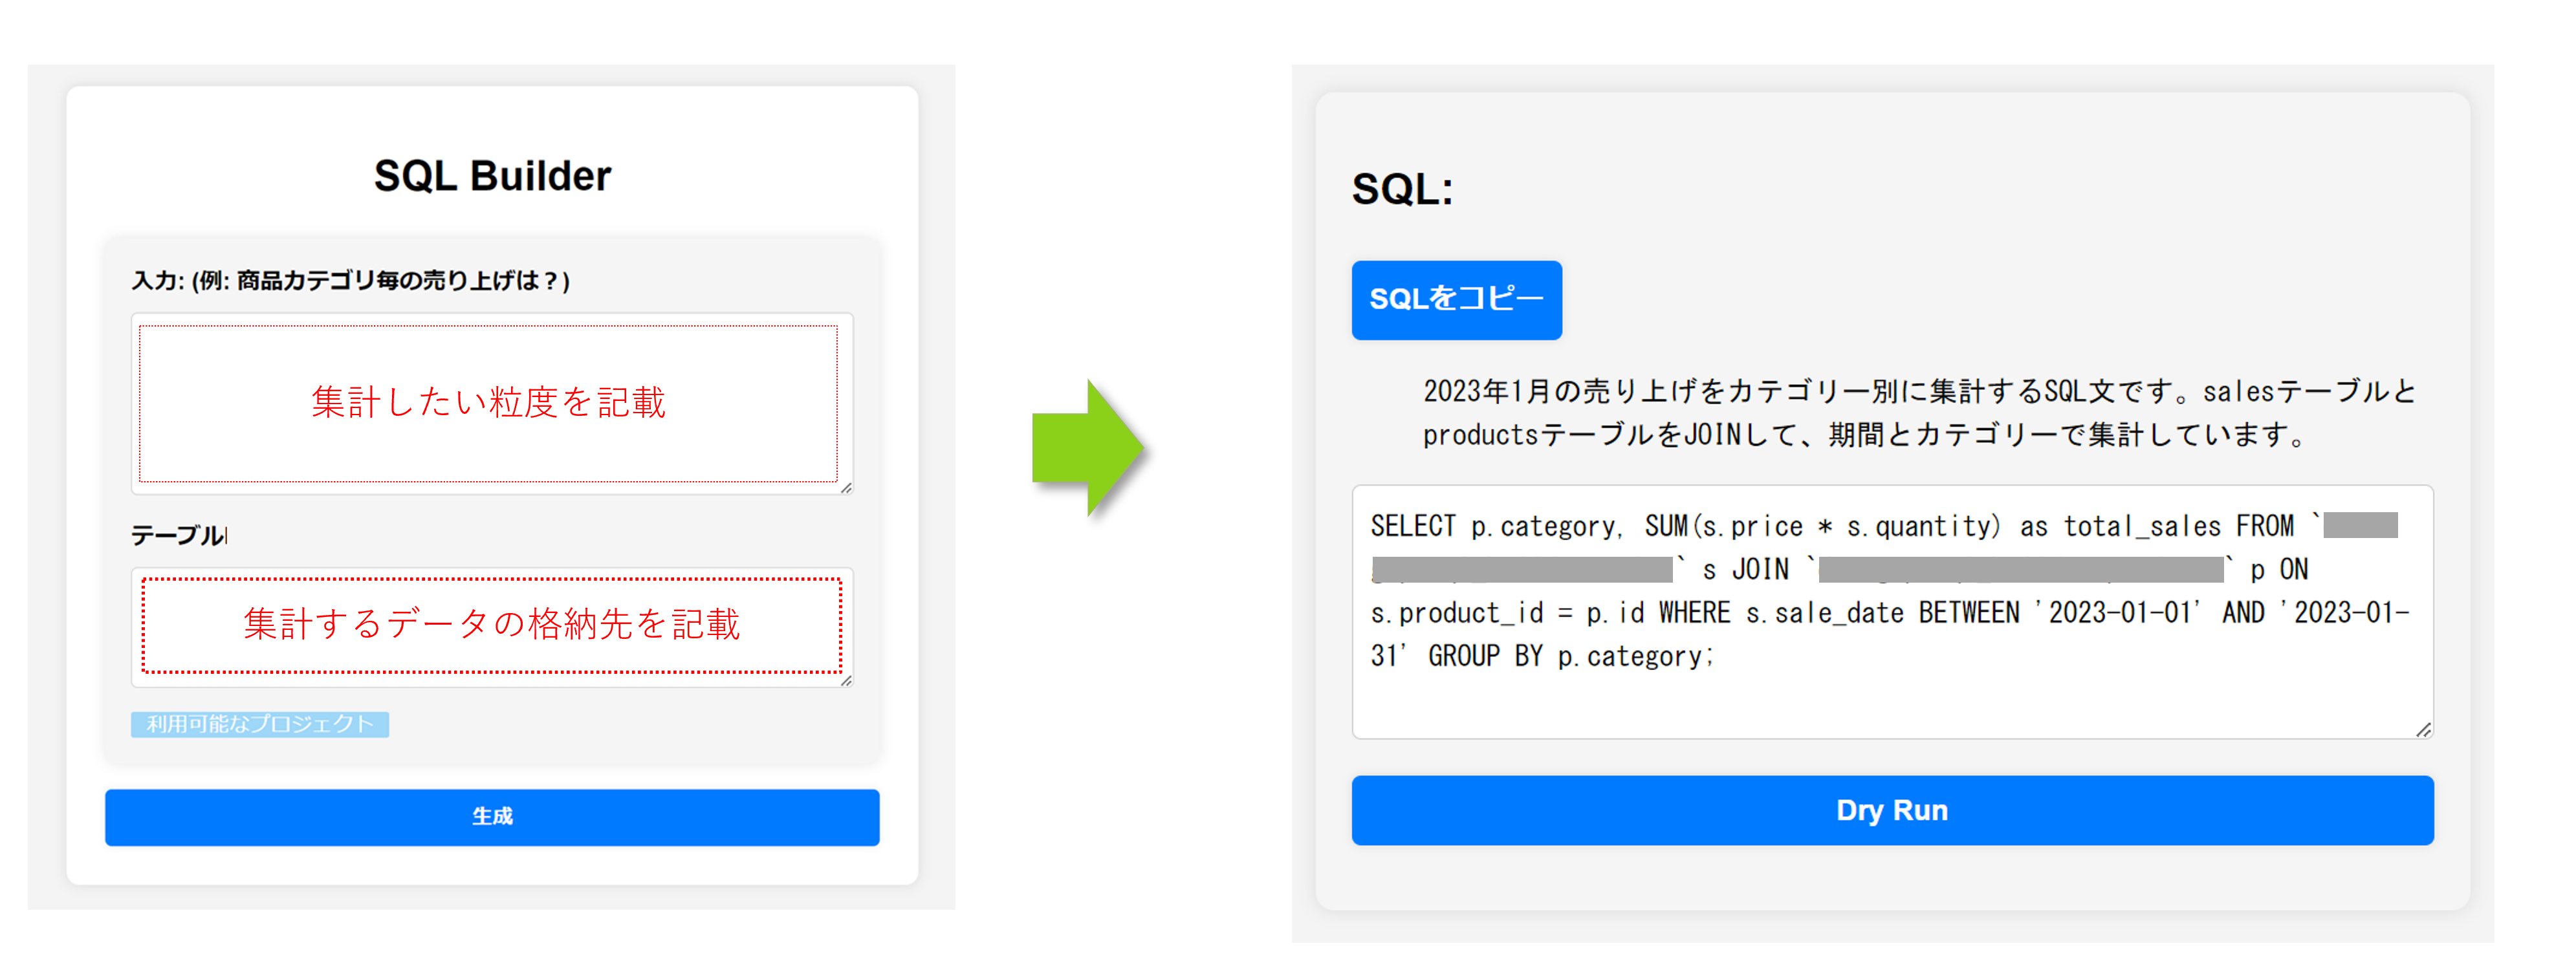 SQL Builder